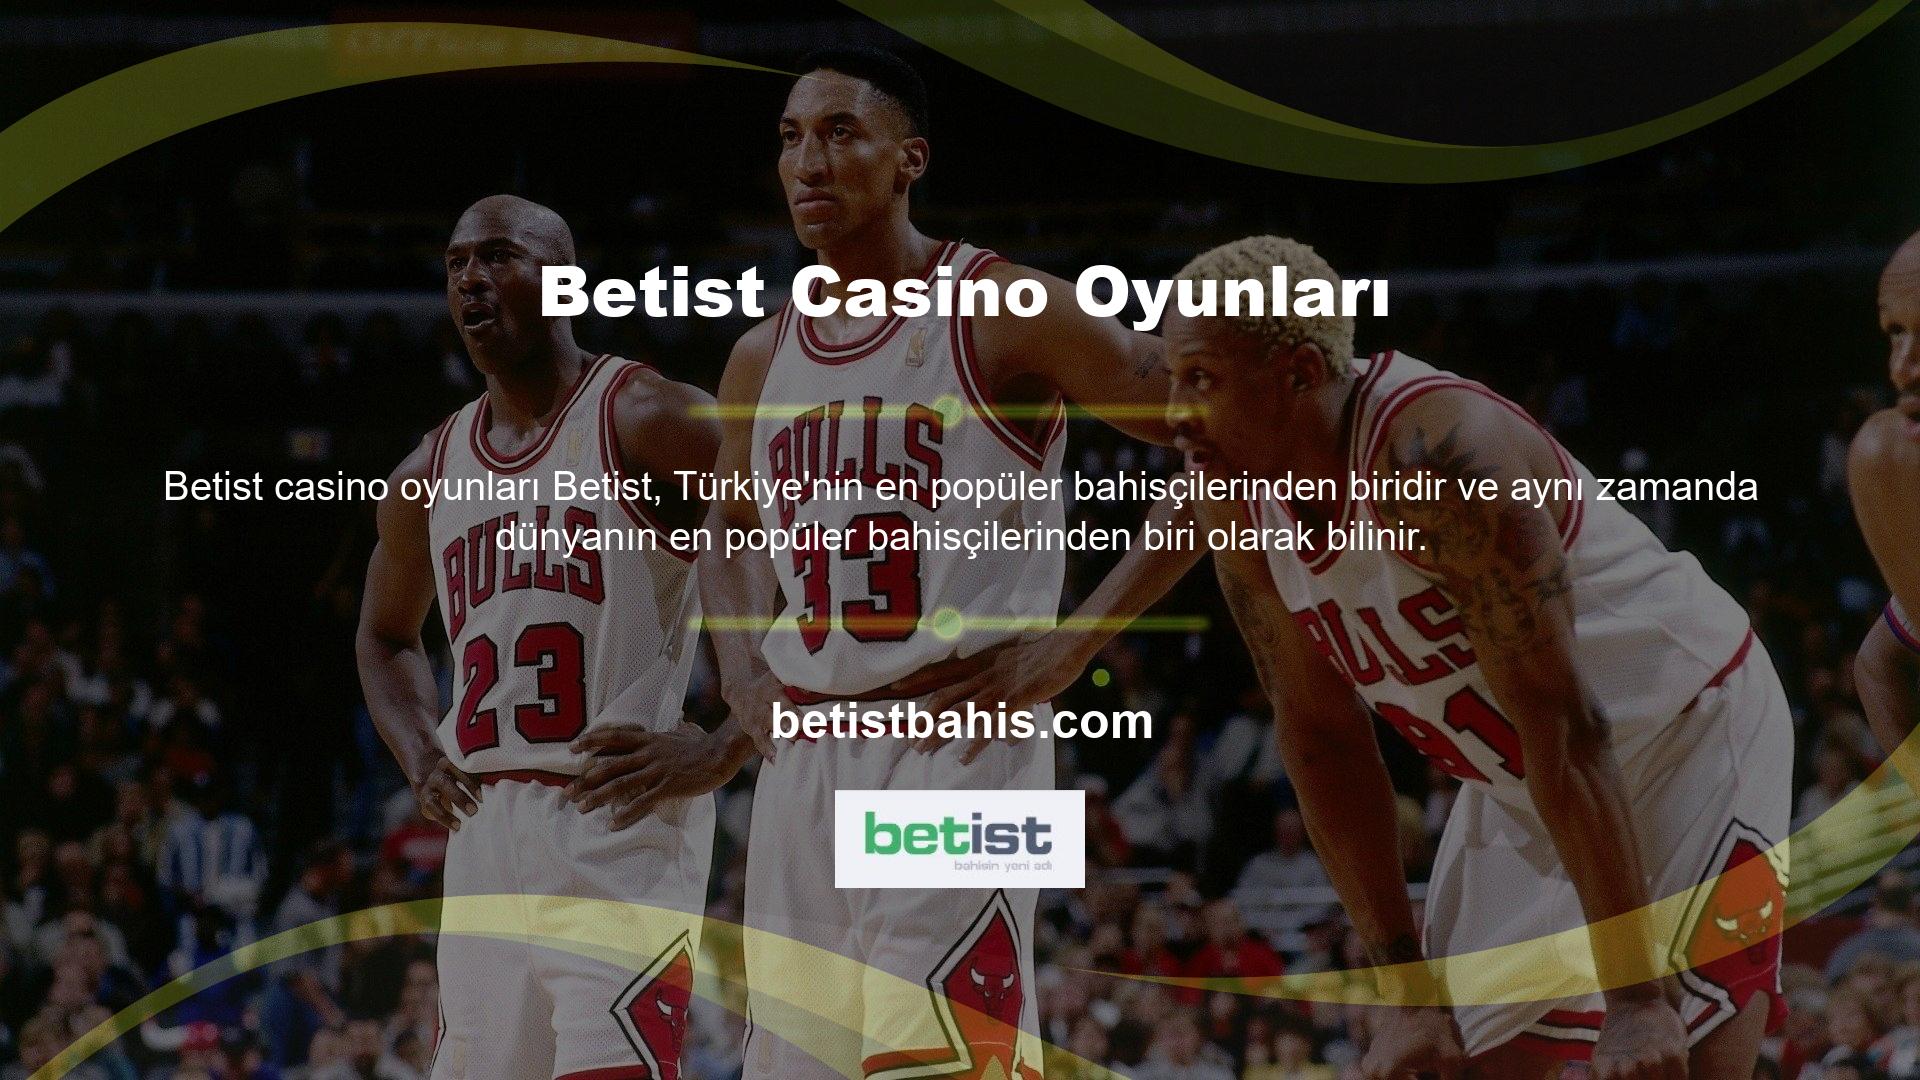 Betist sadece futbol gibi spor dallarına değil, Twitter üzerinden canlı casino oyunlarına da bahis yapmaktadır